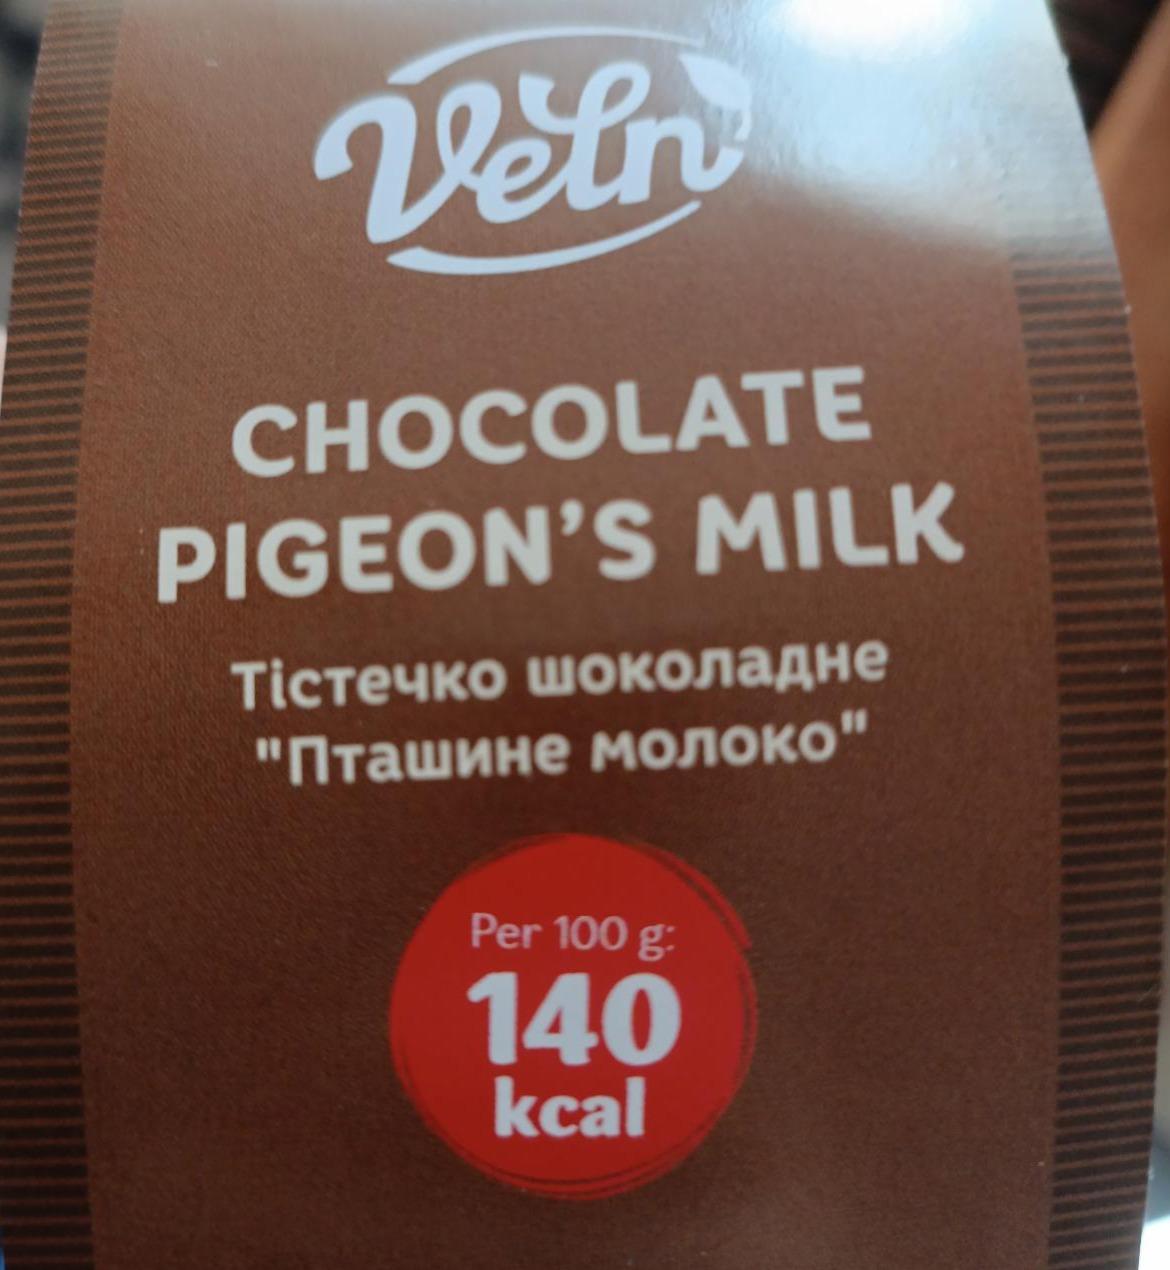 Фото - тістечко шоколадне Пташине молоко Veln